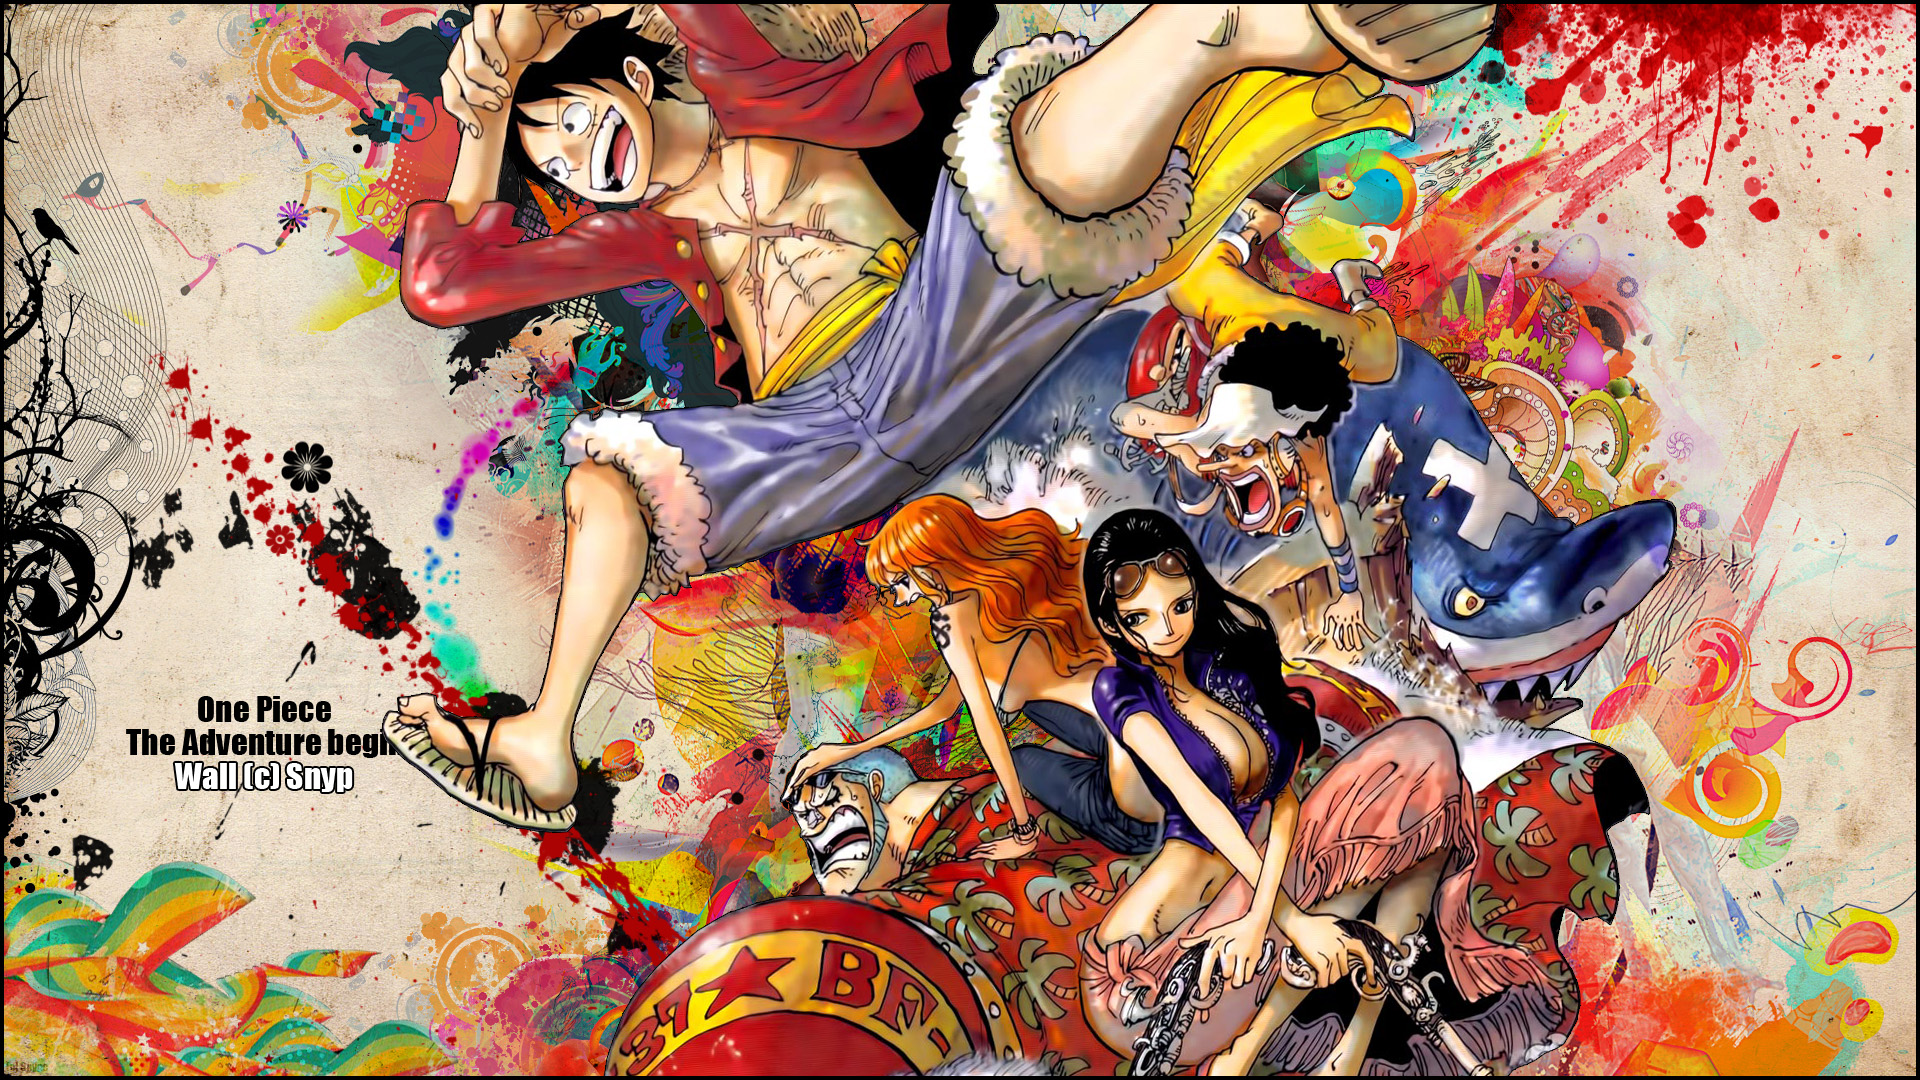 One Piece Wallpaper New World High Def 5831 Wallpaper 1920x1080